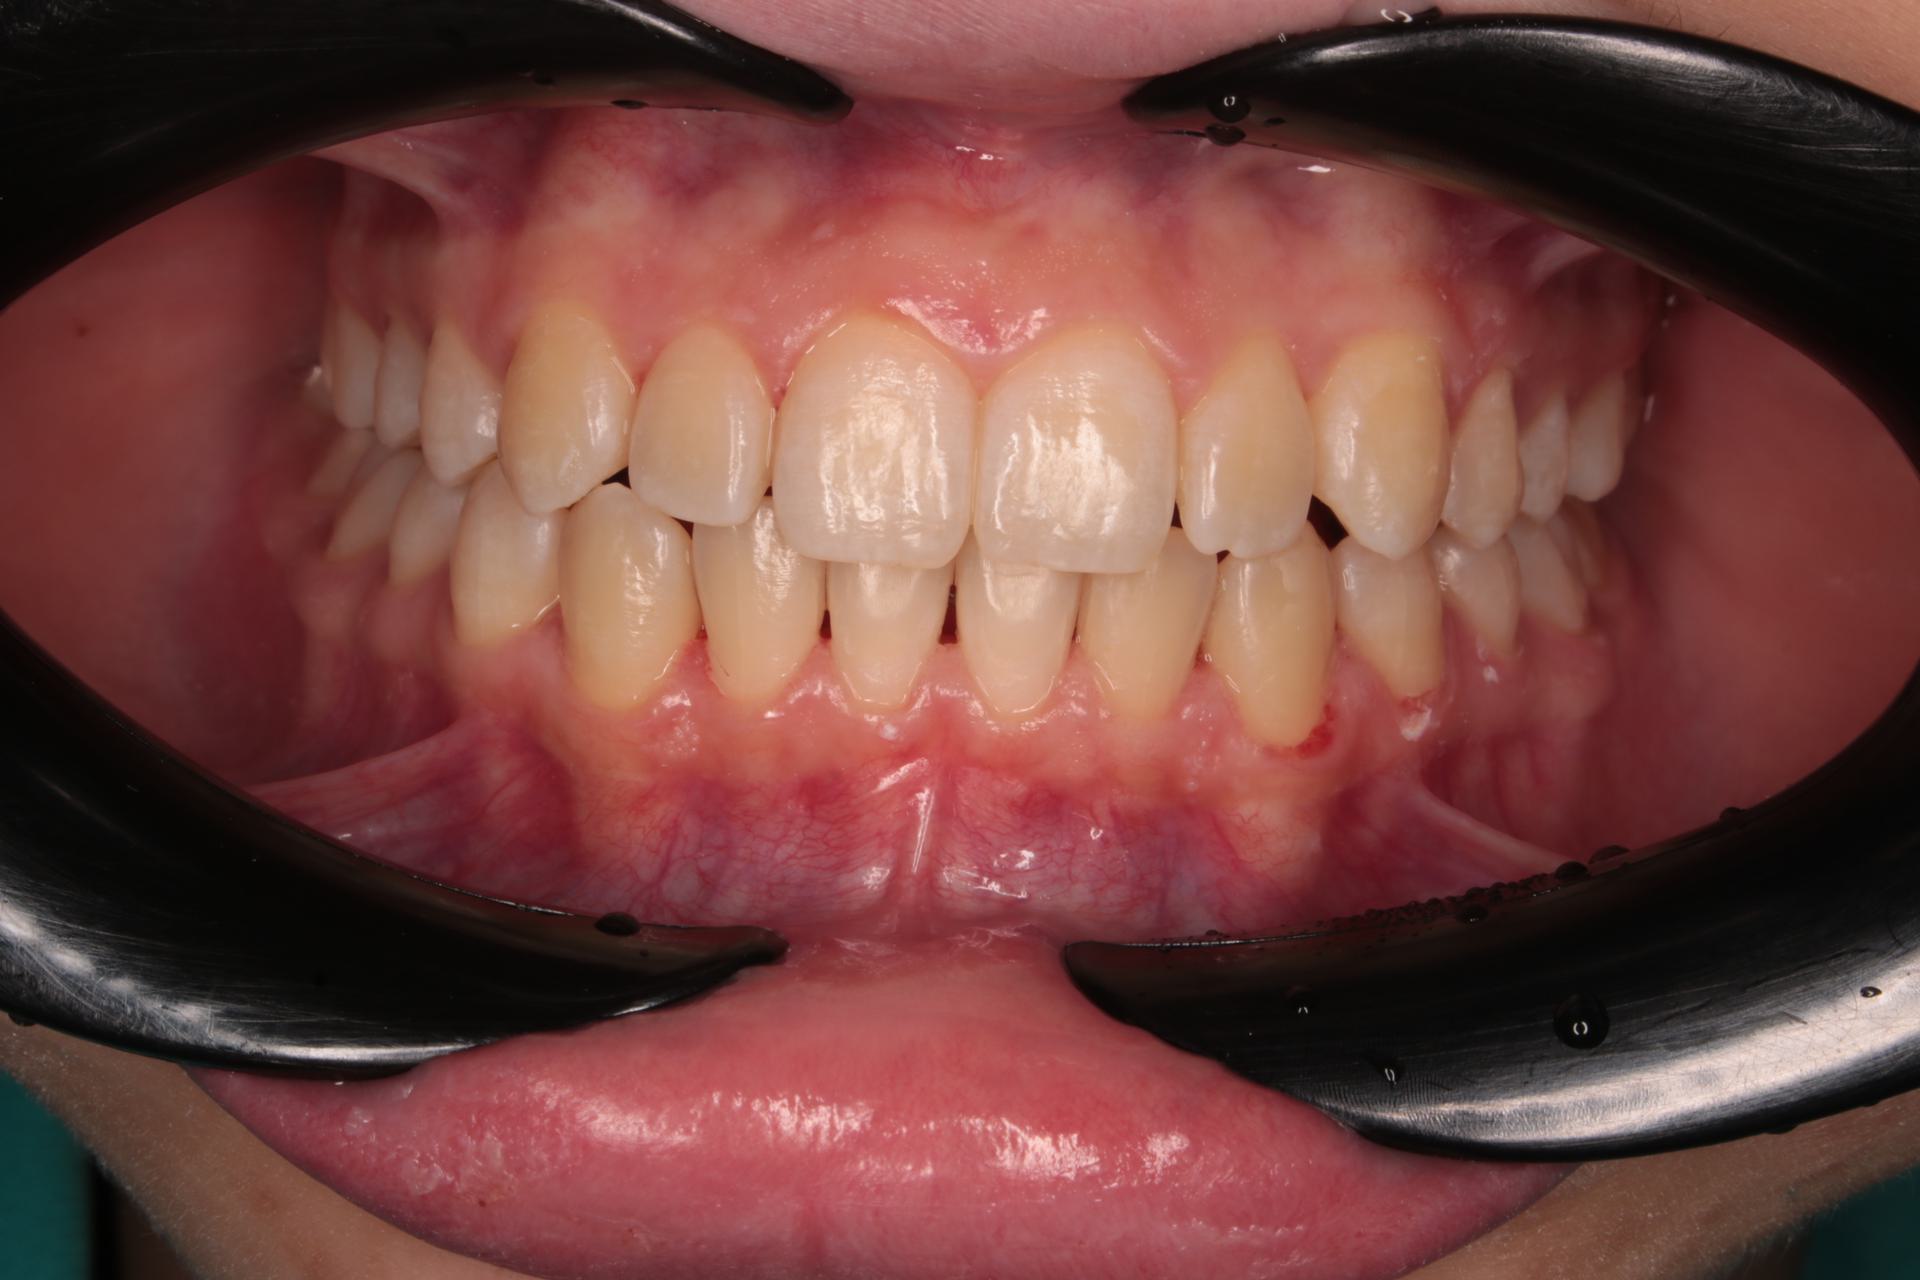 Сужение зубных рядов. Аномалия положения зубов. Ретенция зуба 2.3. Девушка, 18 лет